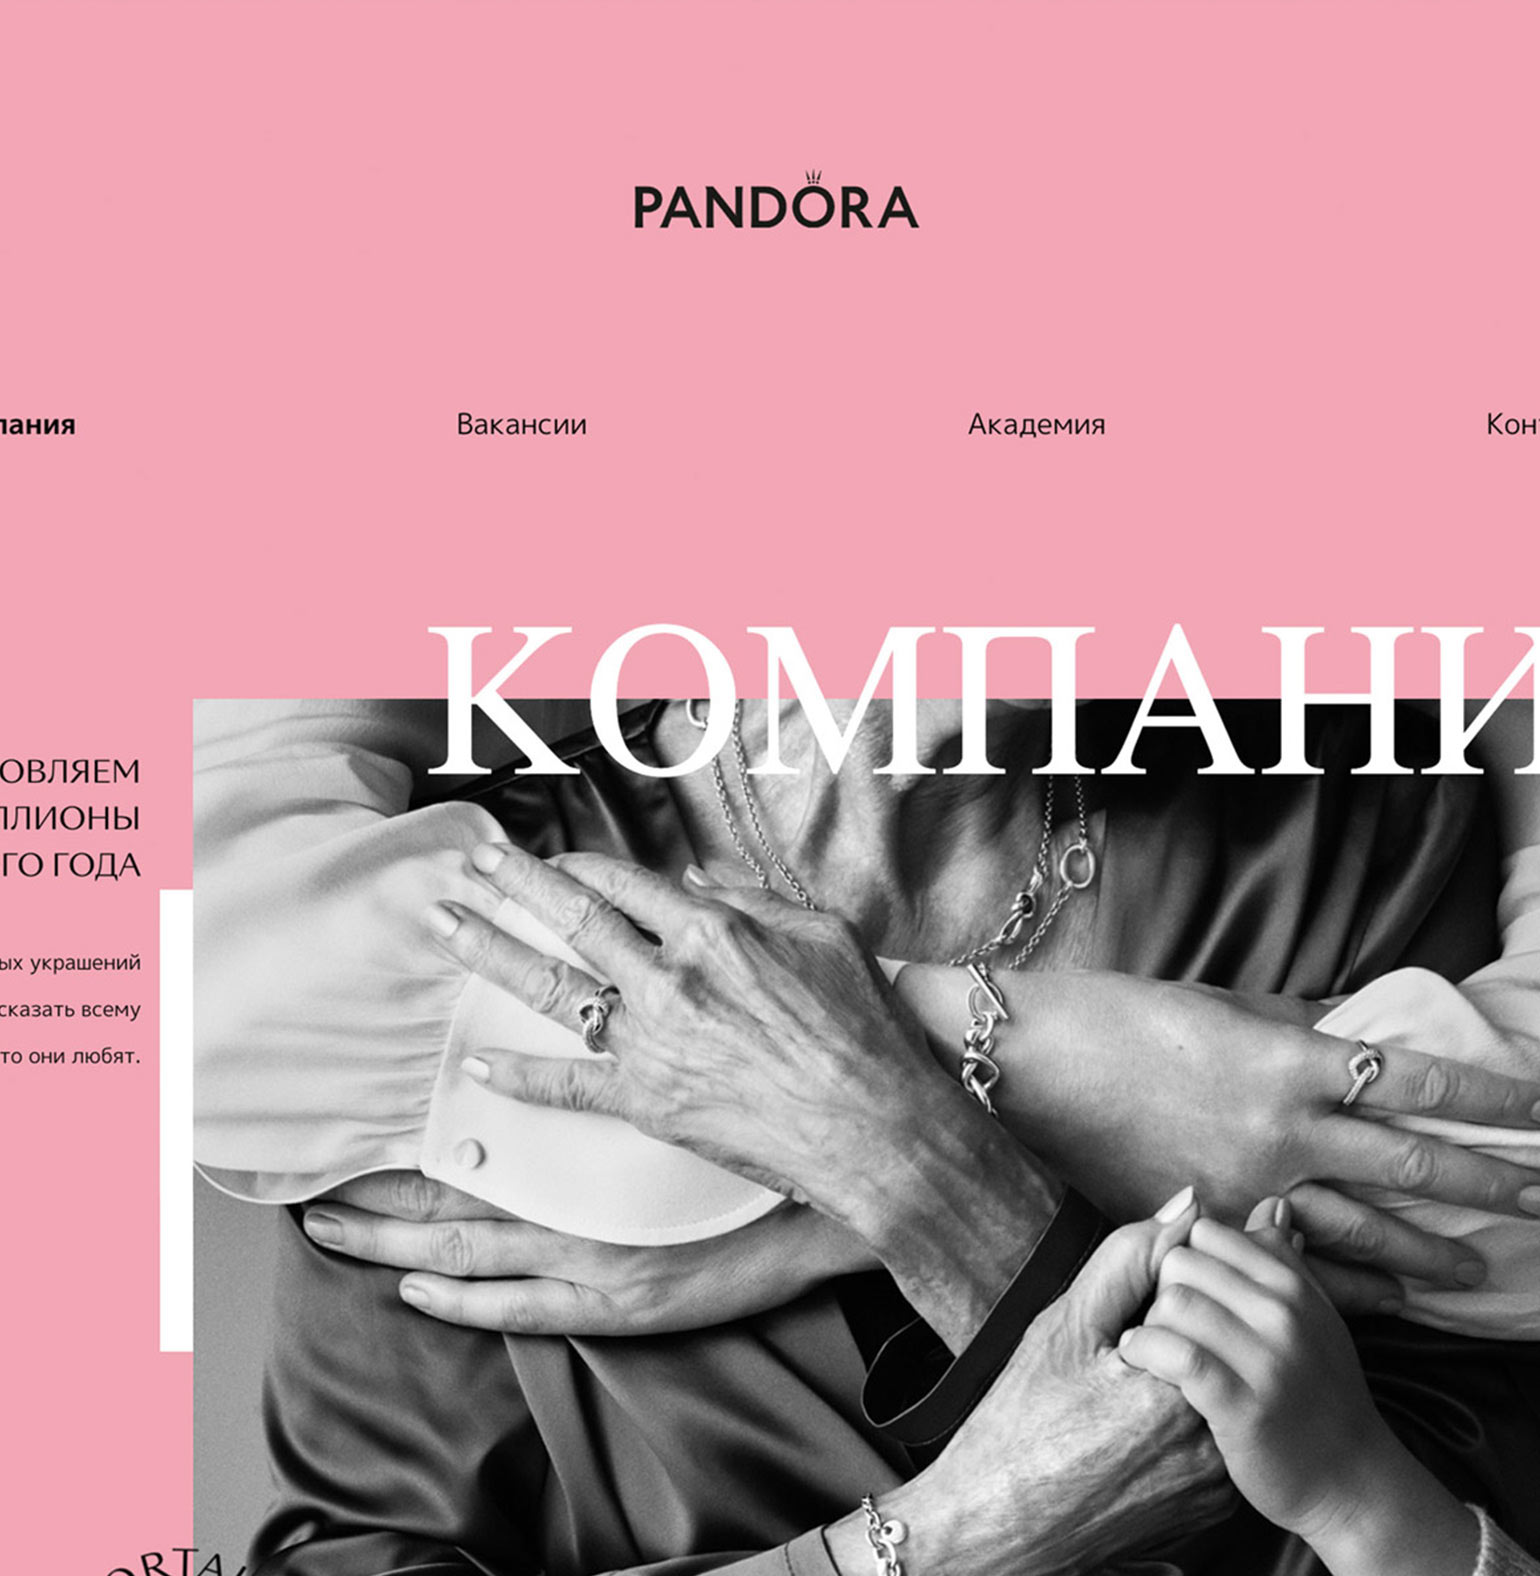 Разработка сайта для Pandora Russia